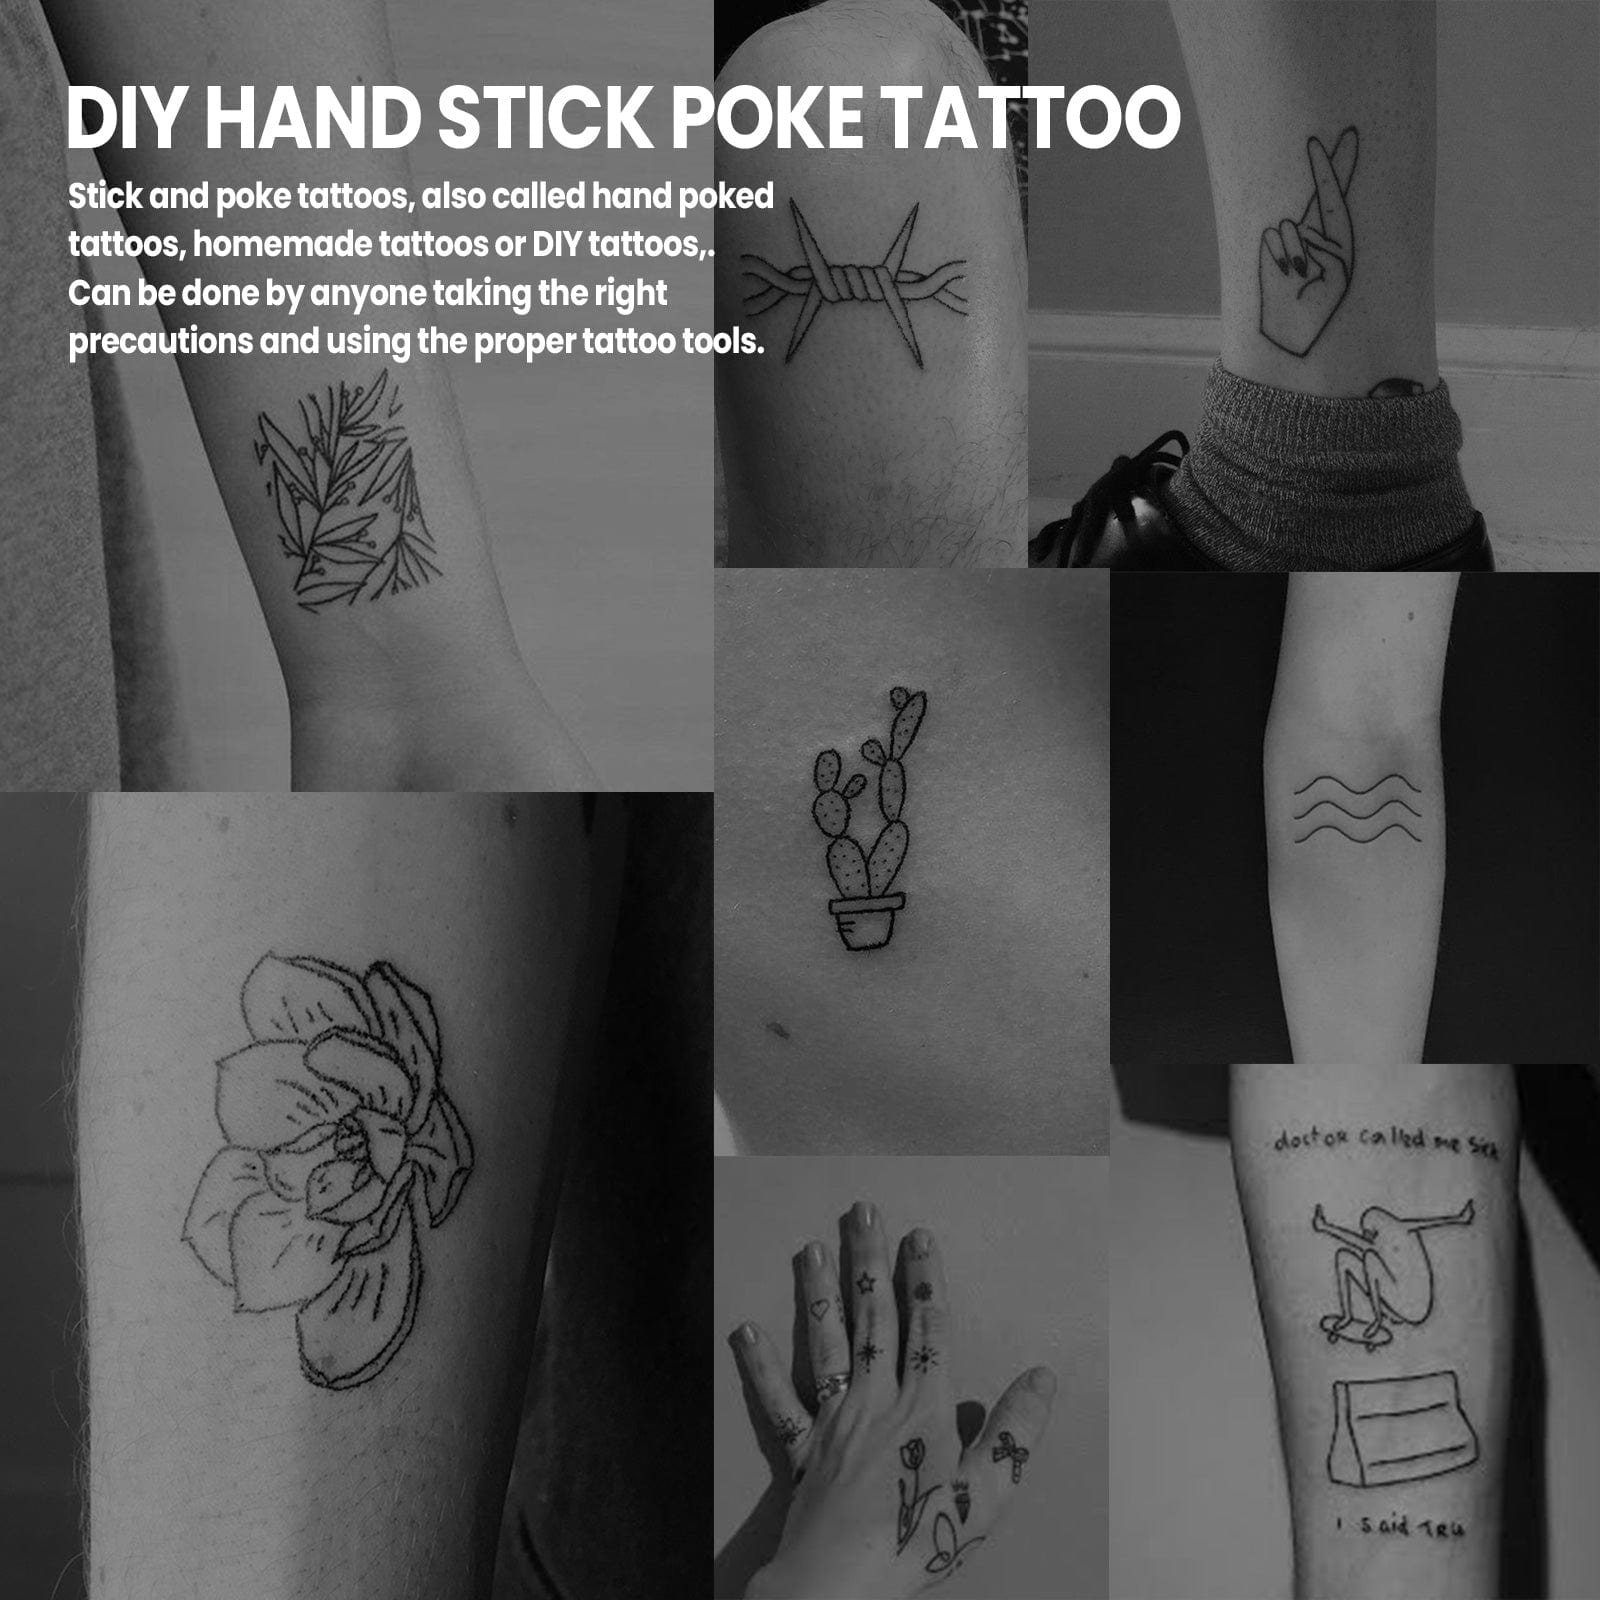 Hand Poke Stick Tattoo Kit - Clean Safe Stick & Poke Tattoo